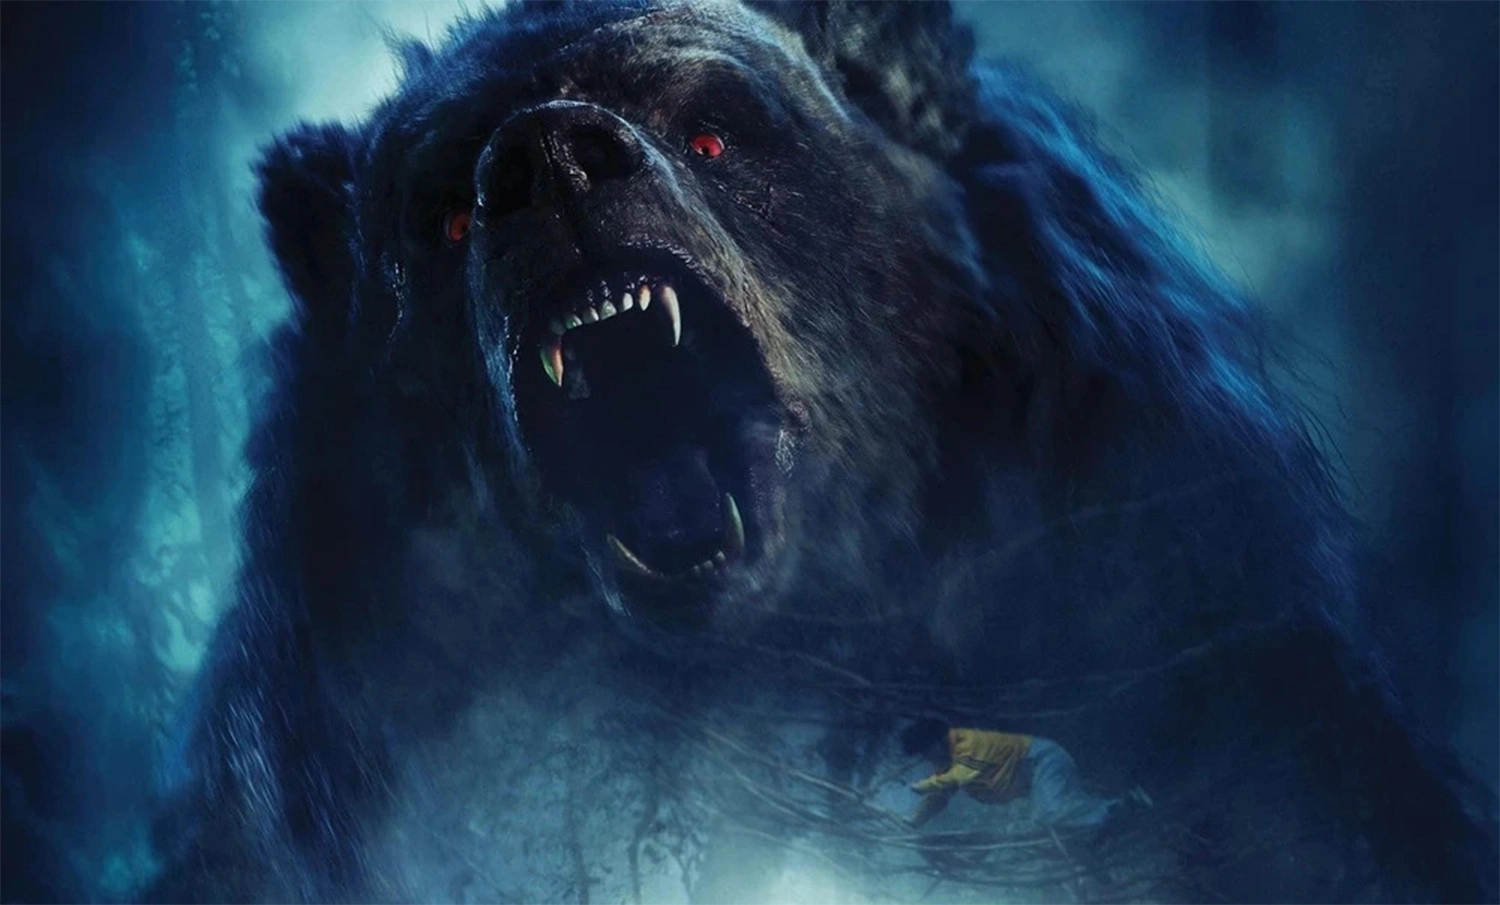 Nhân vật Gấu Mật trong phim được xây dựng hoàn toàn bằng kỹ xảo hình ảnh (VFX)